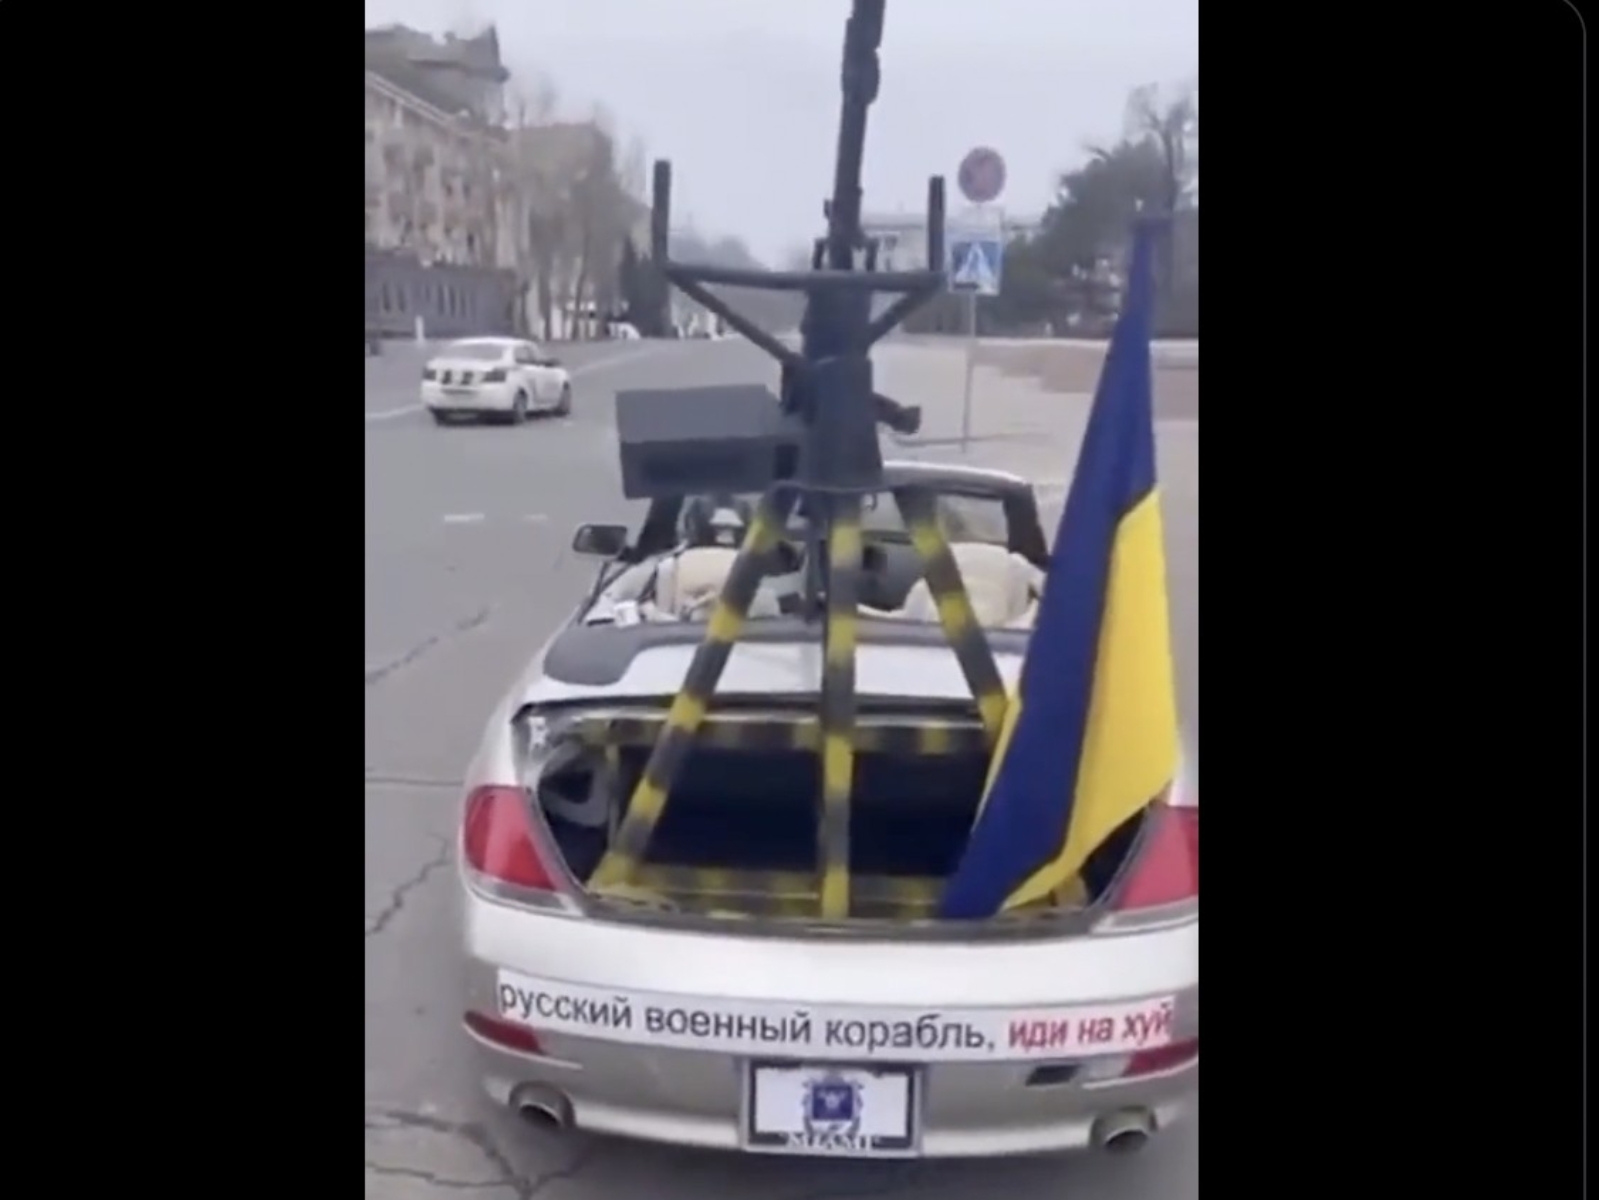 烏克蘭富豪捐 BMW 6 系列敞篷車給軍方，甚至還改裝成「機槍戰術車」力抗俄羅斯軍隊！